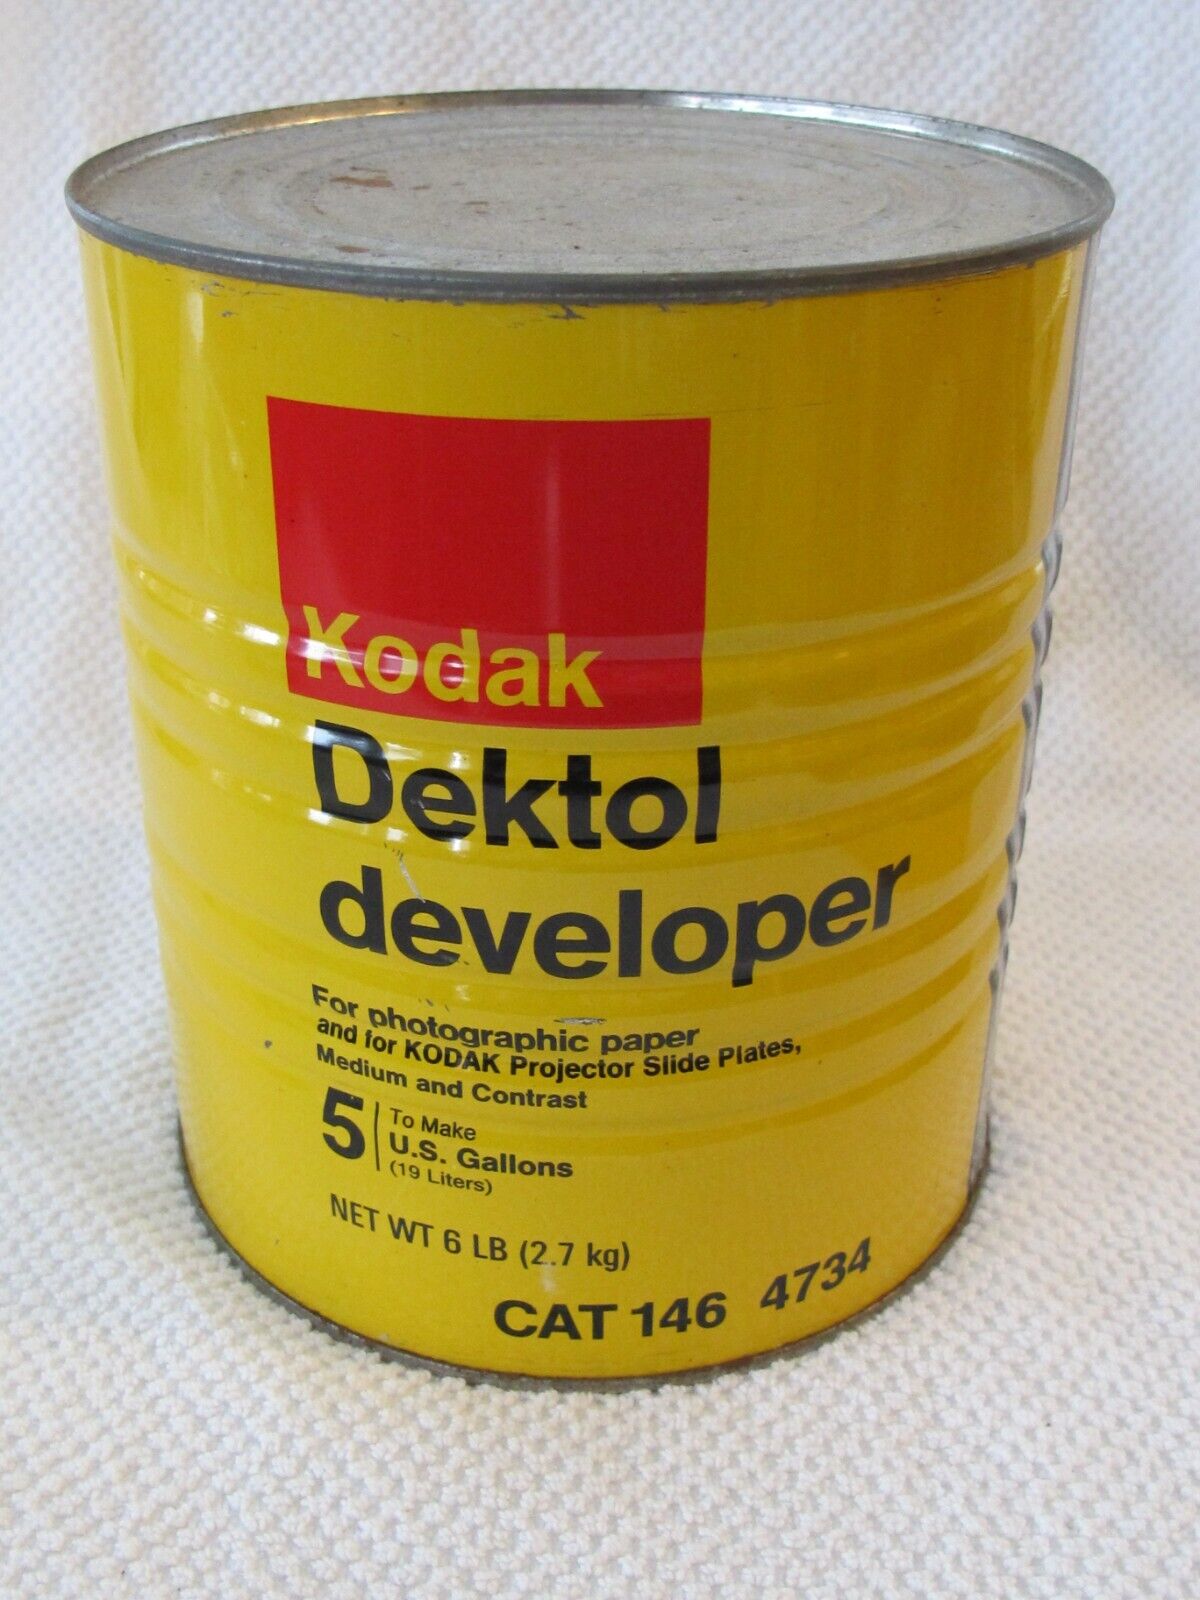 Vtg Kodak Dektol Developer For Photographic Paper 5 Gallons Or 19 Liters